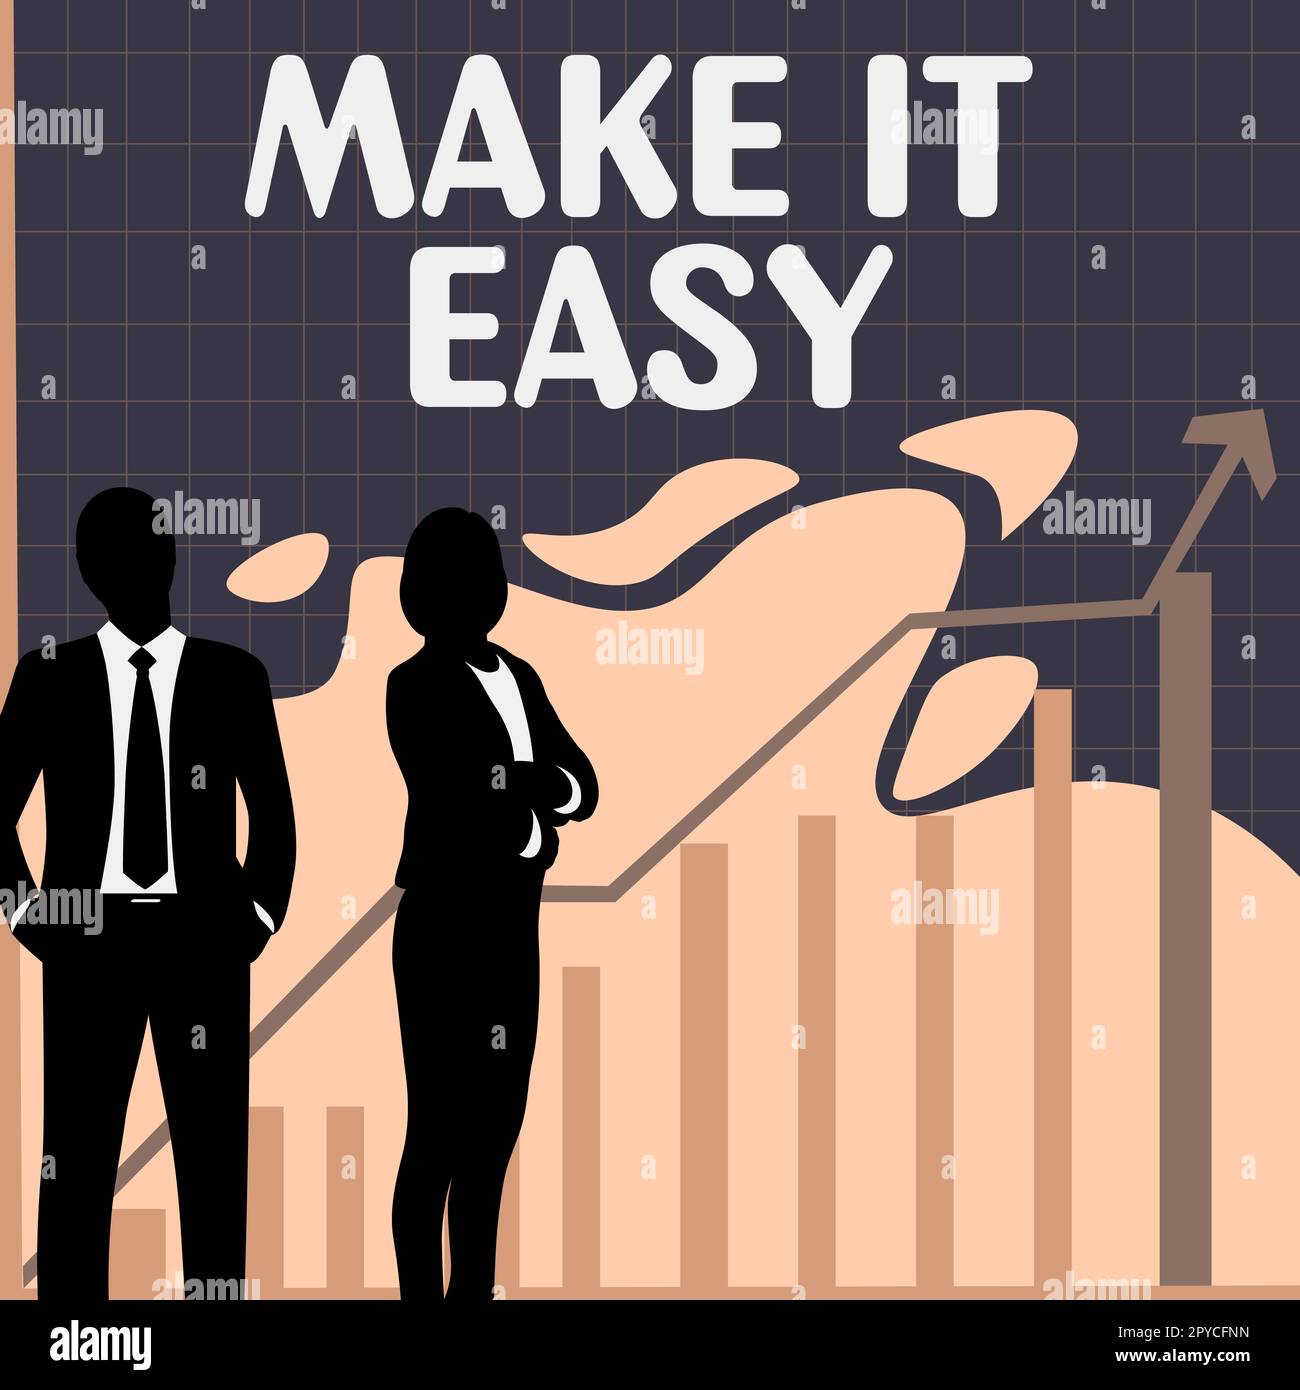 Textunterschrift präsentiert Make IT Easy. Geschäftsidee intelligenter Ansatz mühelos frei von Sorgen oder Schwierigkeiten Stockfoto